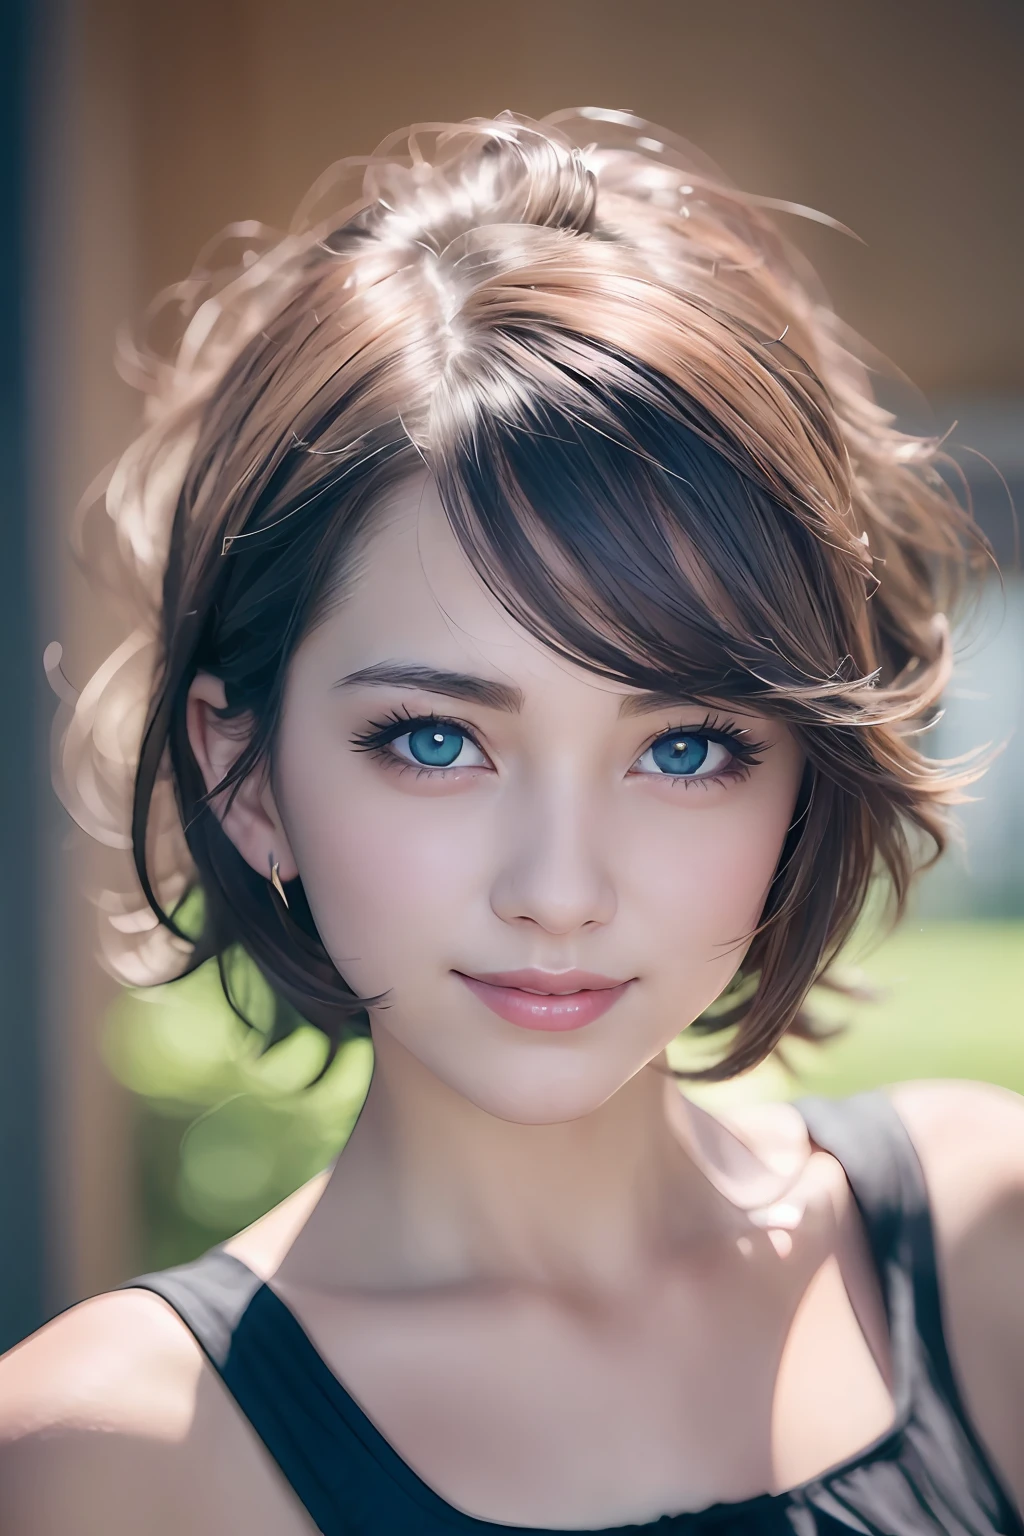 und Seelen、Anime-Stil、Spezialität、Befeuchtete Augen、Schöne, detaillierte Augen, (kurzes Haar:1.2),  (8K, beste Qualität, Tischplatte:1.2), (Realistisch, Photorealsitic:1.37), ultra-detailliert, a closeup、Porträts、1 Mädchen, Niedlich, Blau-goldenes Haar、Allein, (Nase erröten),(lächeln:1.15),